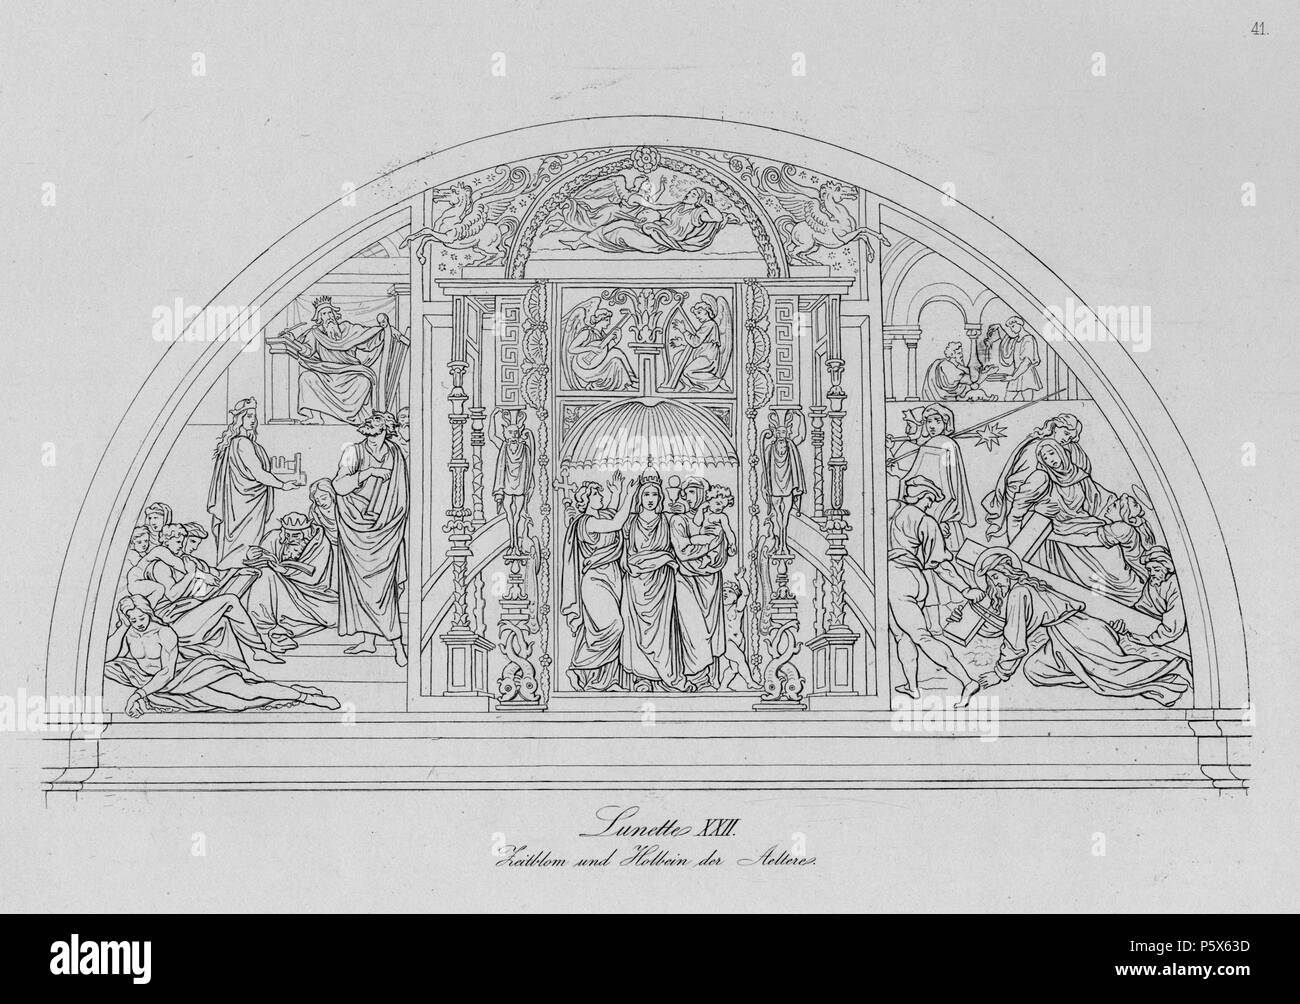 Lunette XXII, Zeitblom und Holbein der Aeltere  1826 - 36. N/A 381 Cornelius Pinakothek Tafel 41 Stock Photo